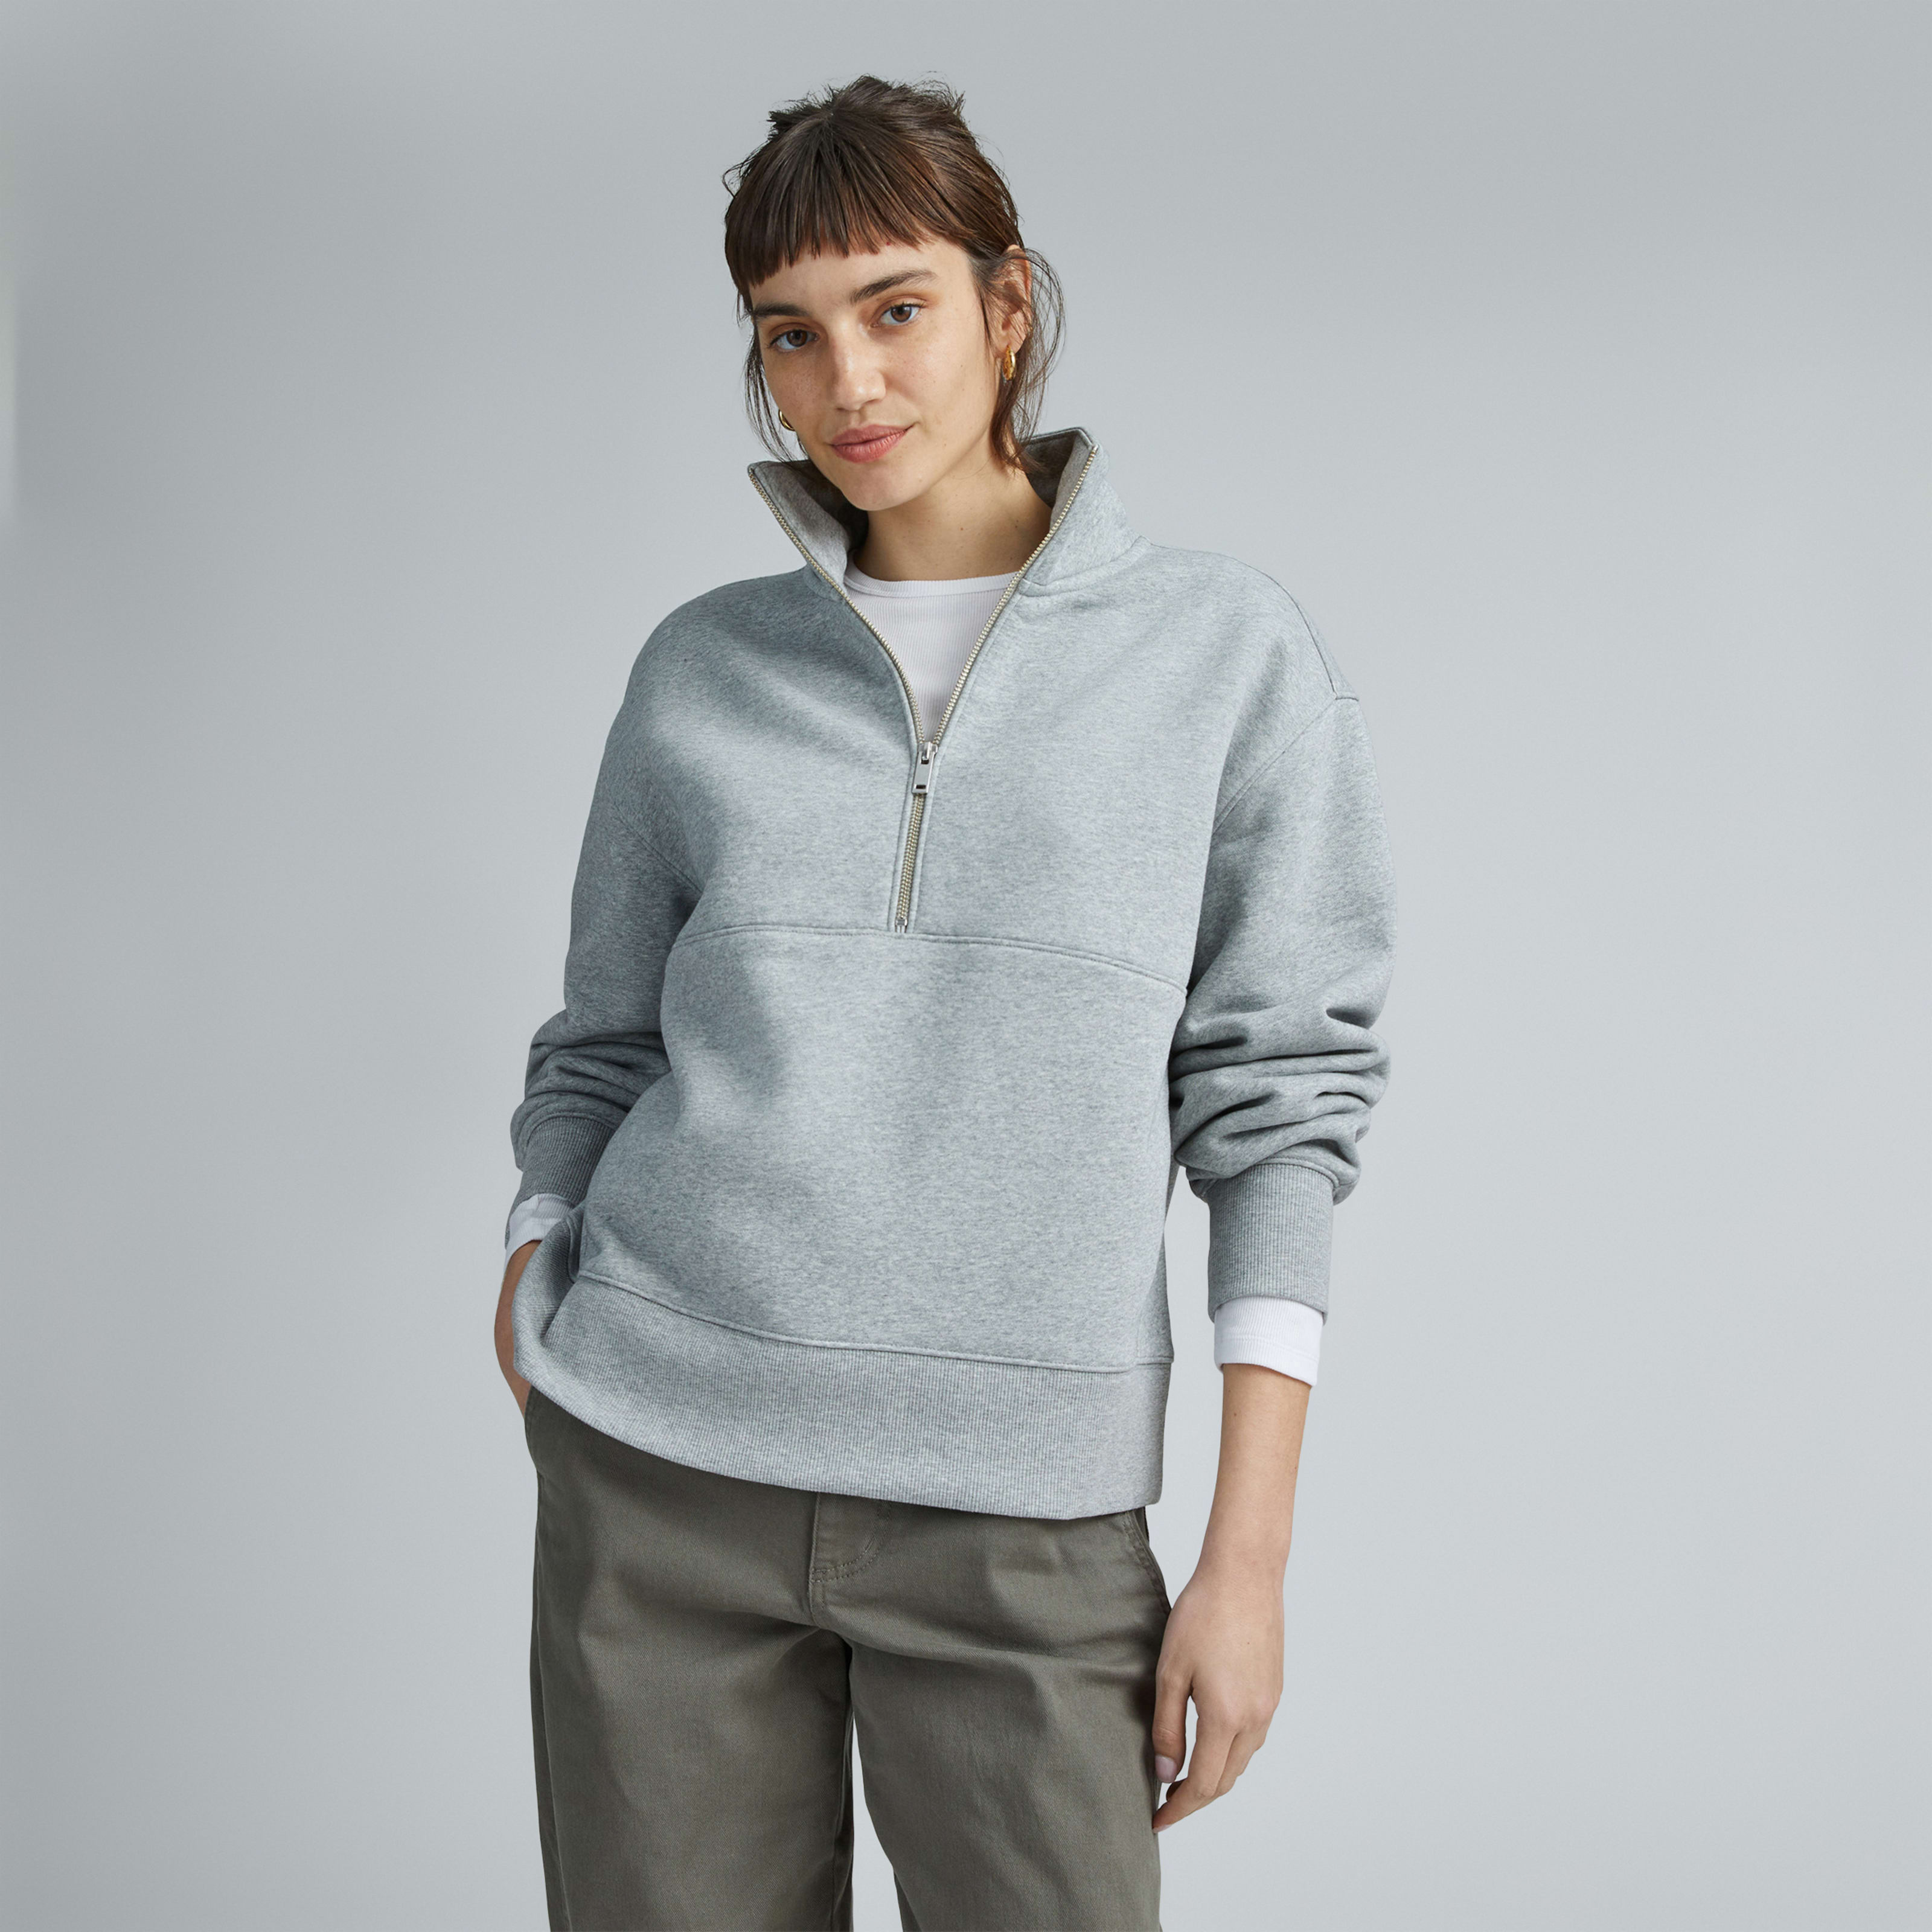 women's retrack half-zip sweatshirt by everlane in heather grey, size xxs